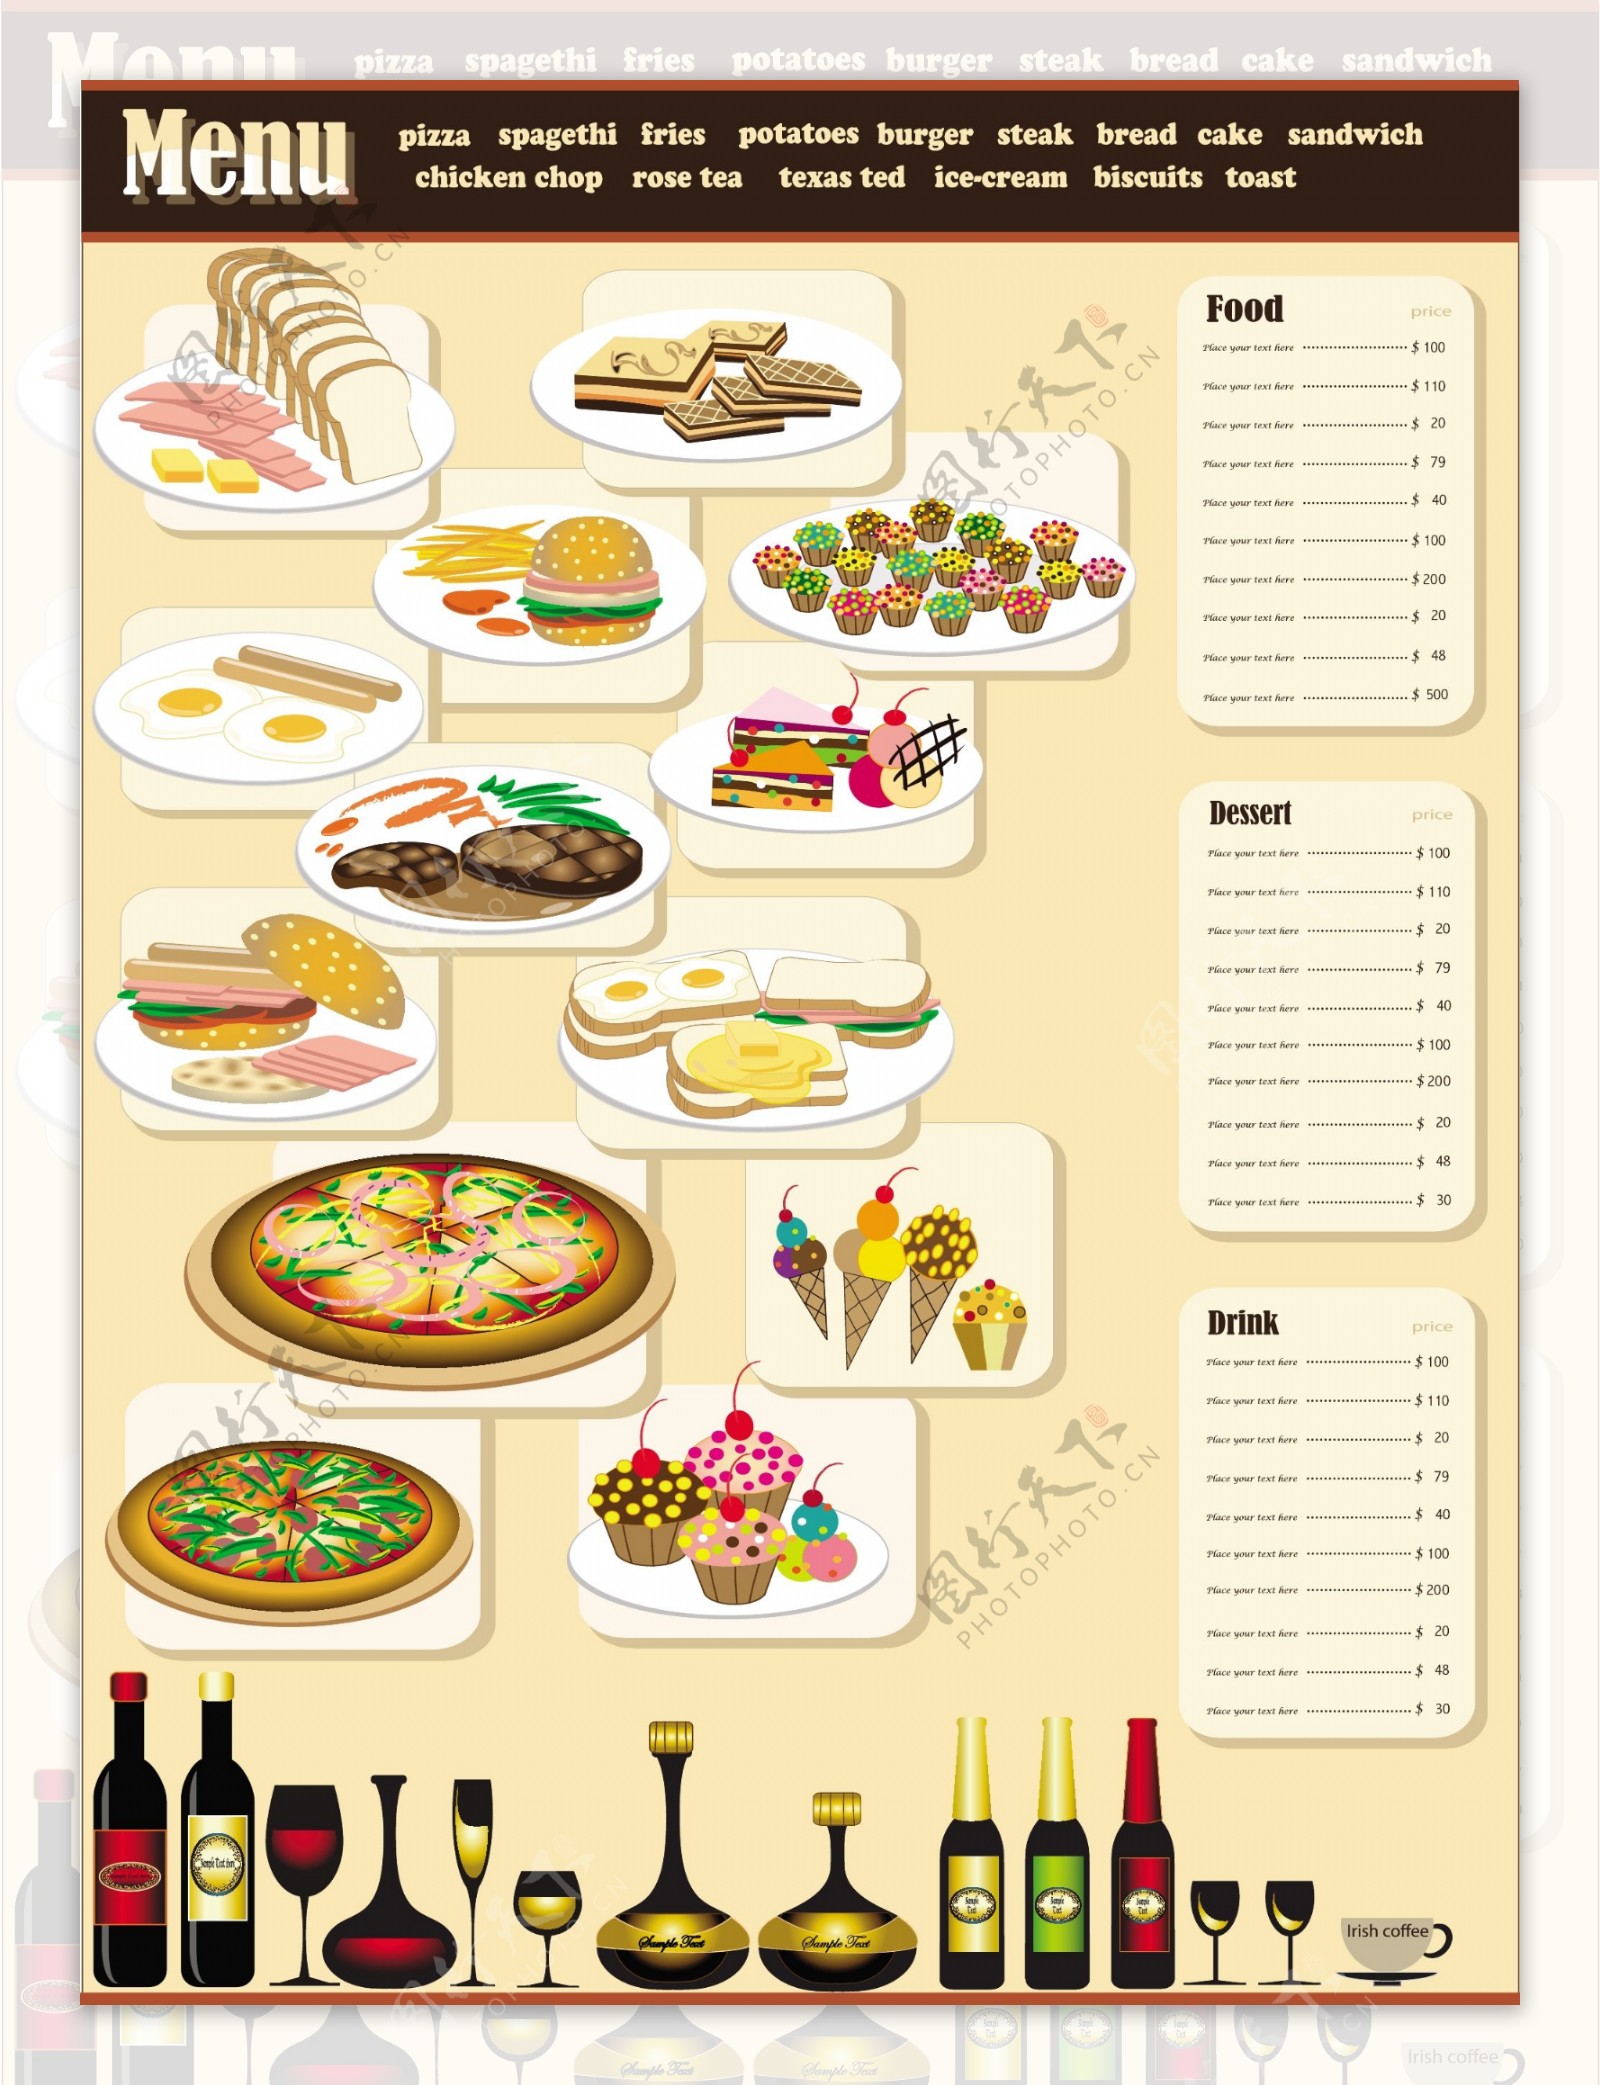 餐厅的菜单设计矢量素材01